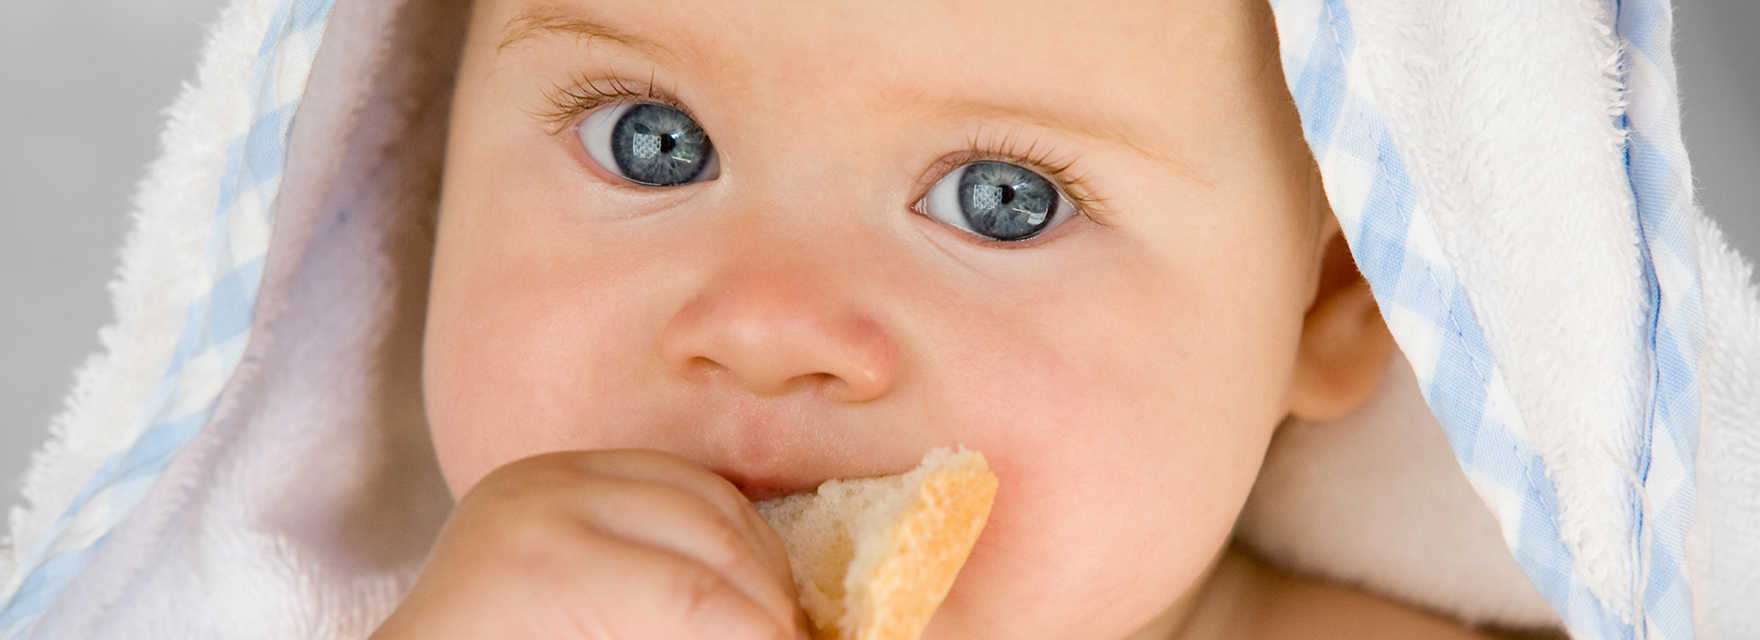 Egészséges feltét gyermeked első szelet kenyerére.